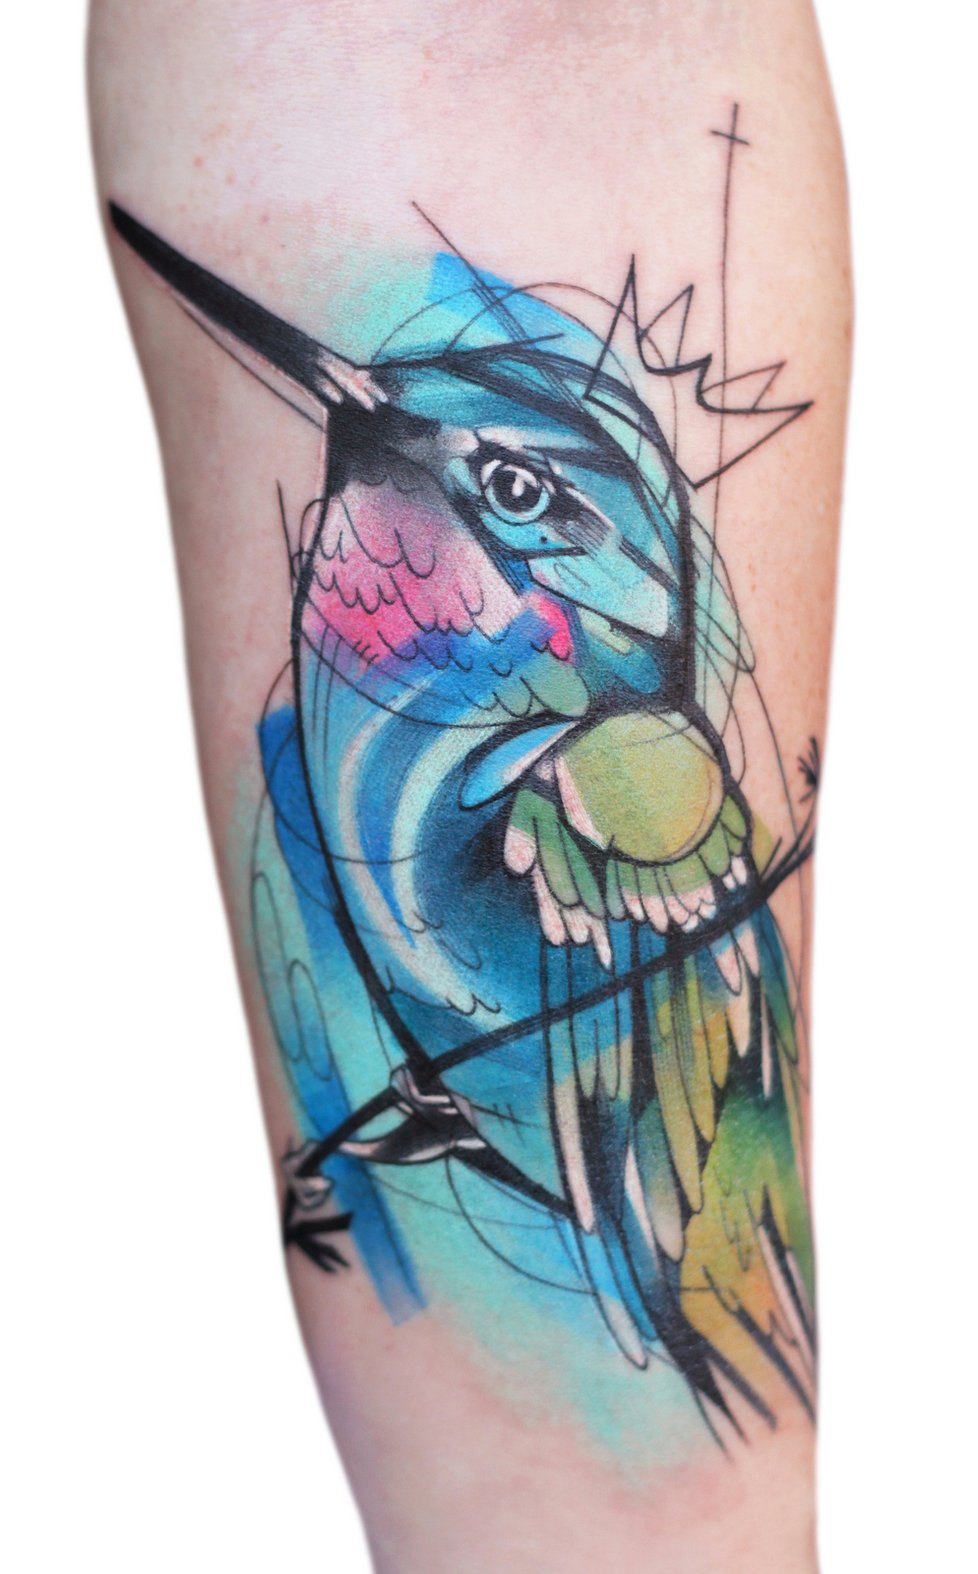 Tetování od Ivany Belákové jsou barevná a velmi výrazná.